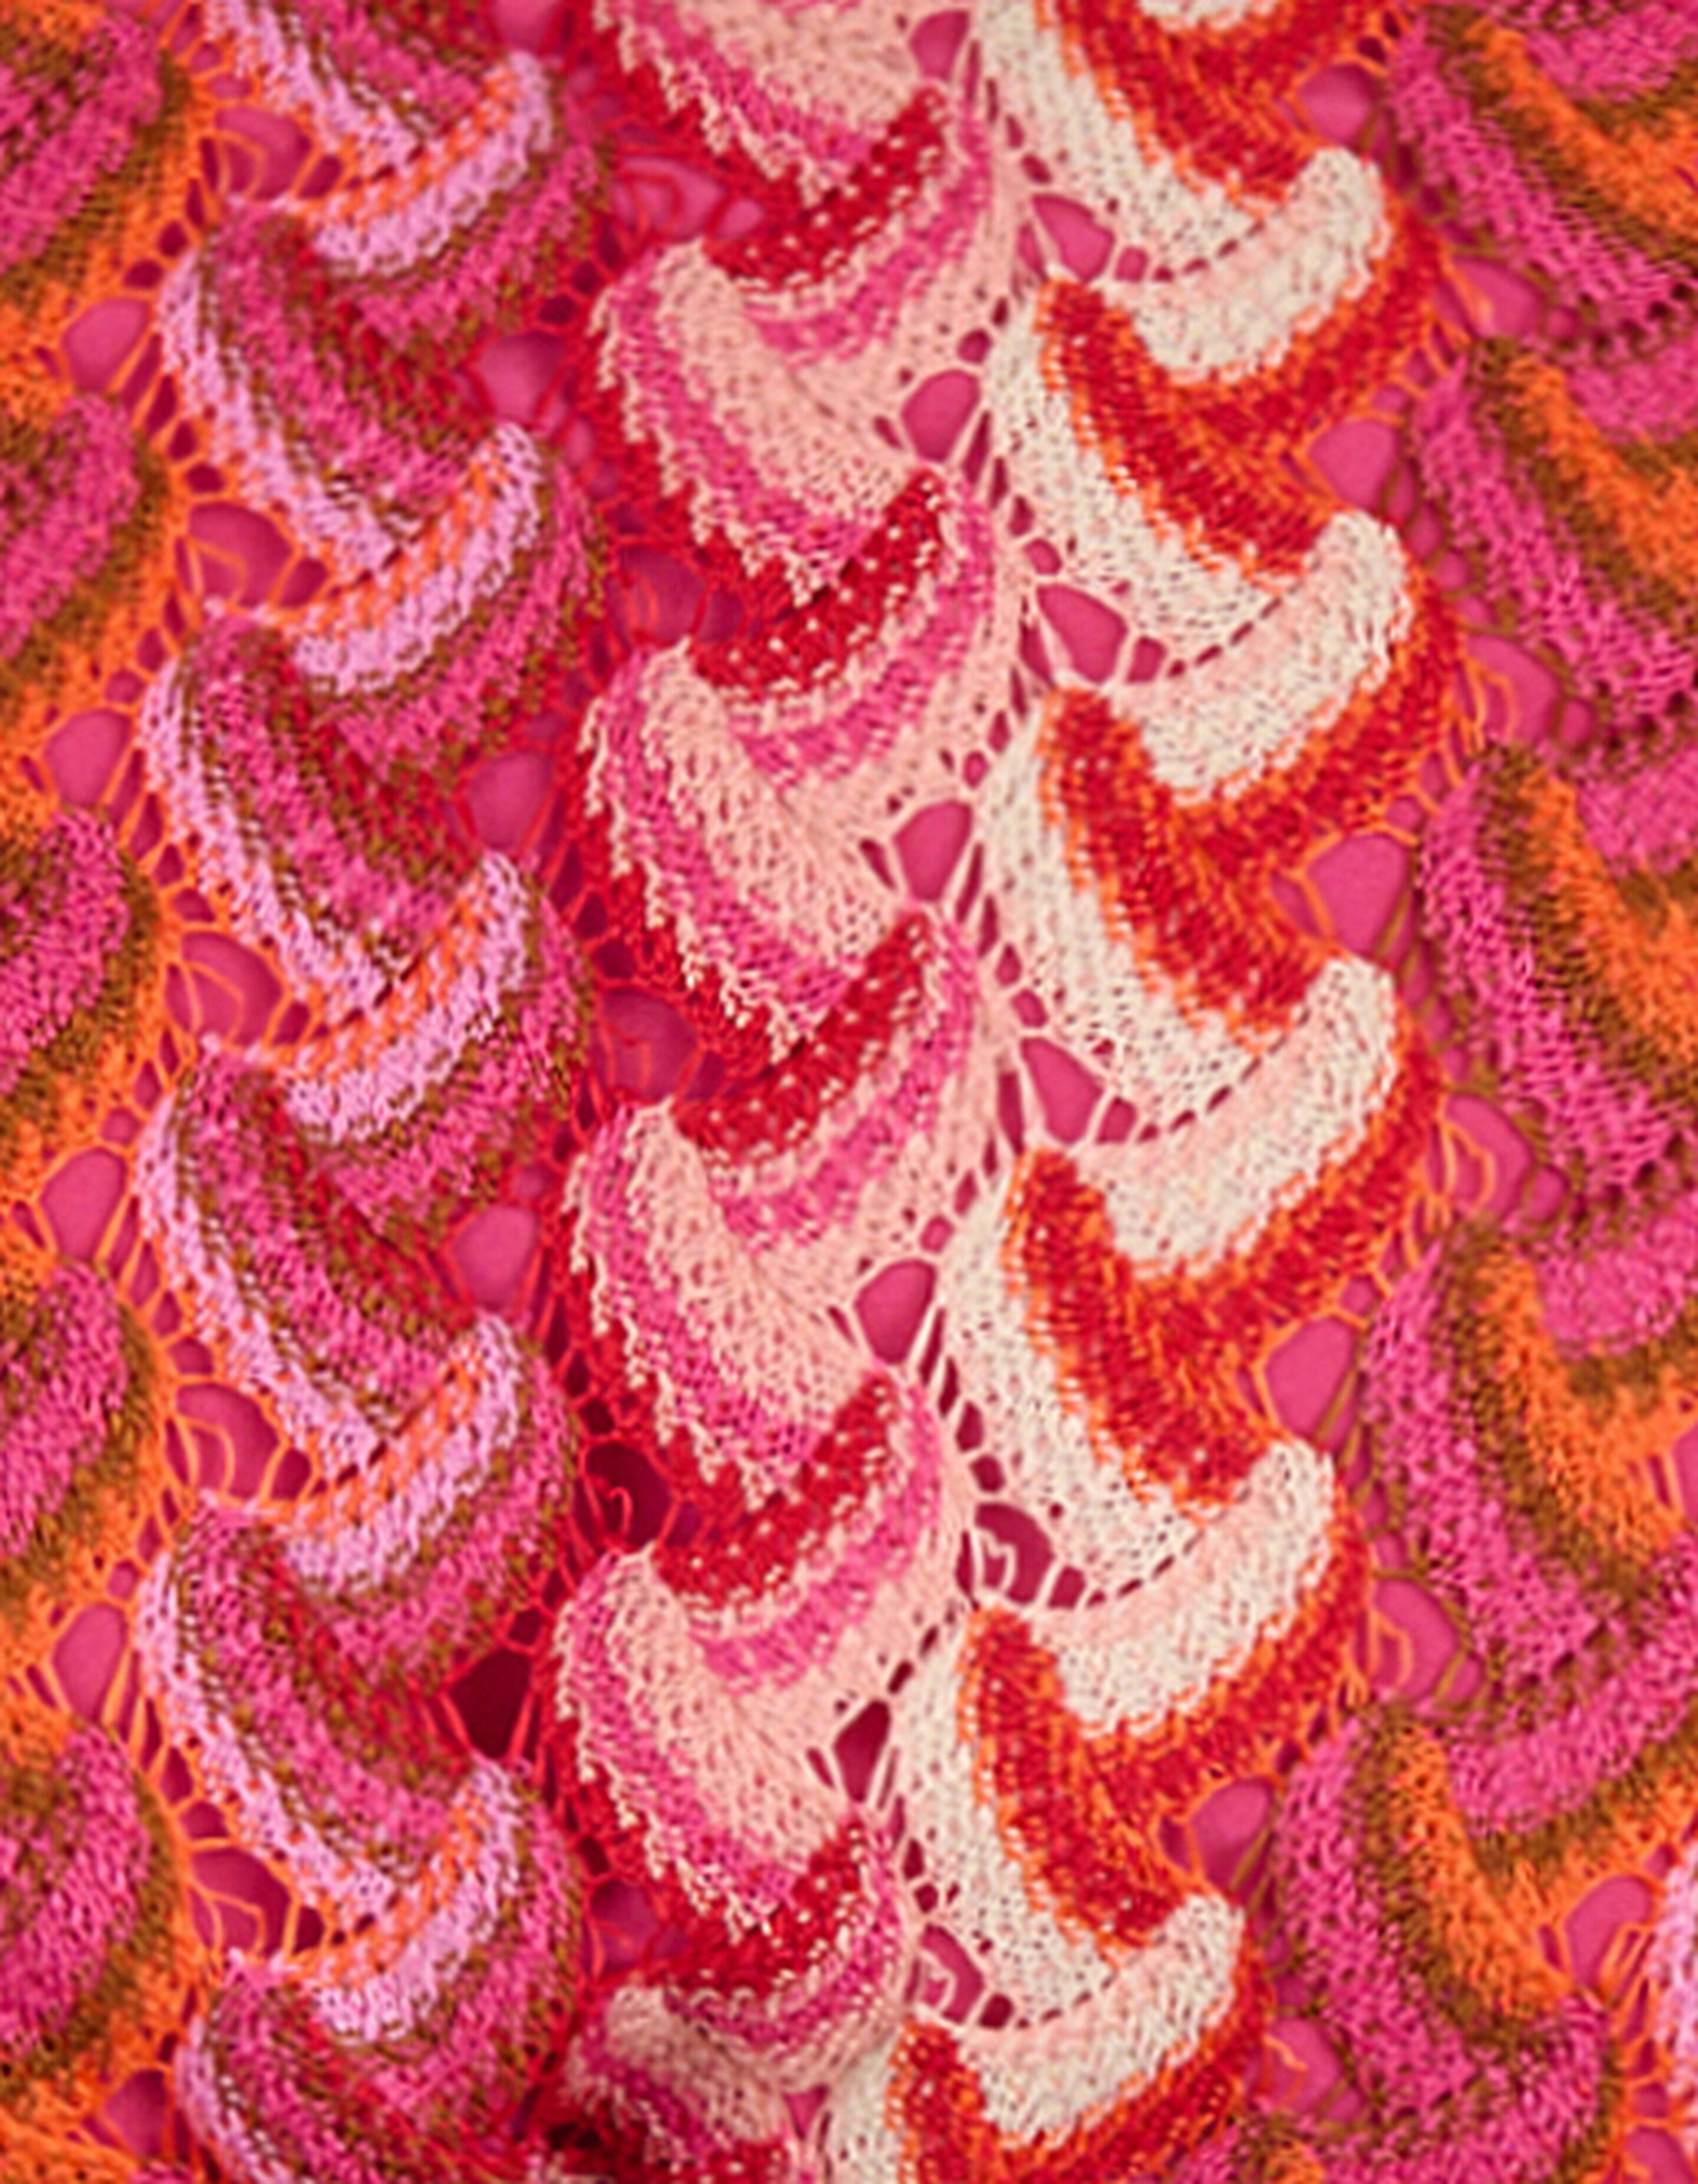 Crochet Bikini Broekje Roze SHOEBY ACCESSOIRES